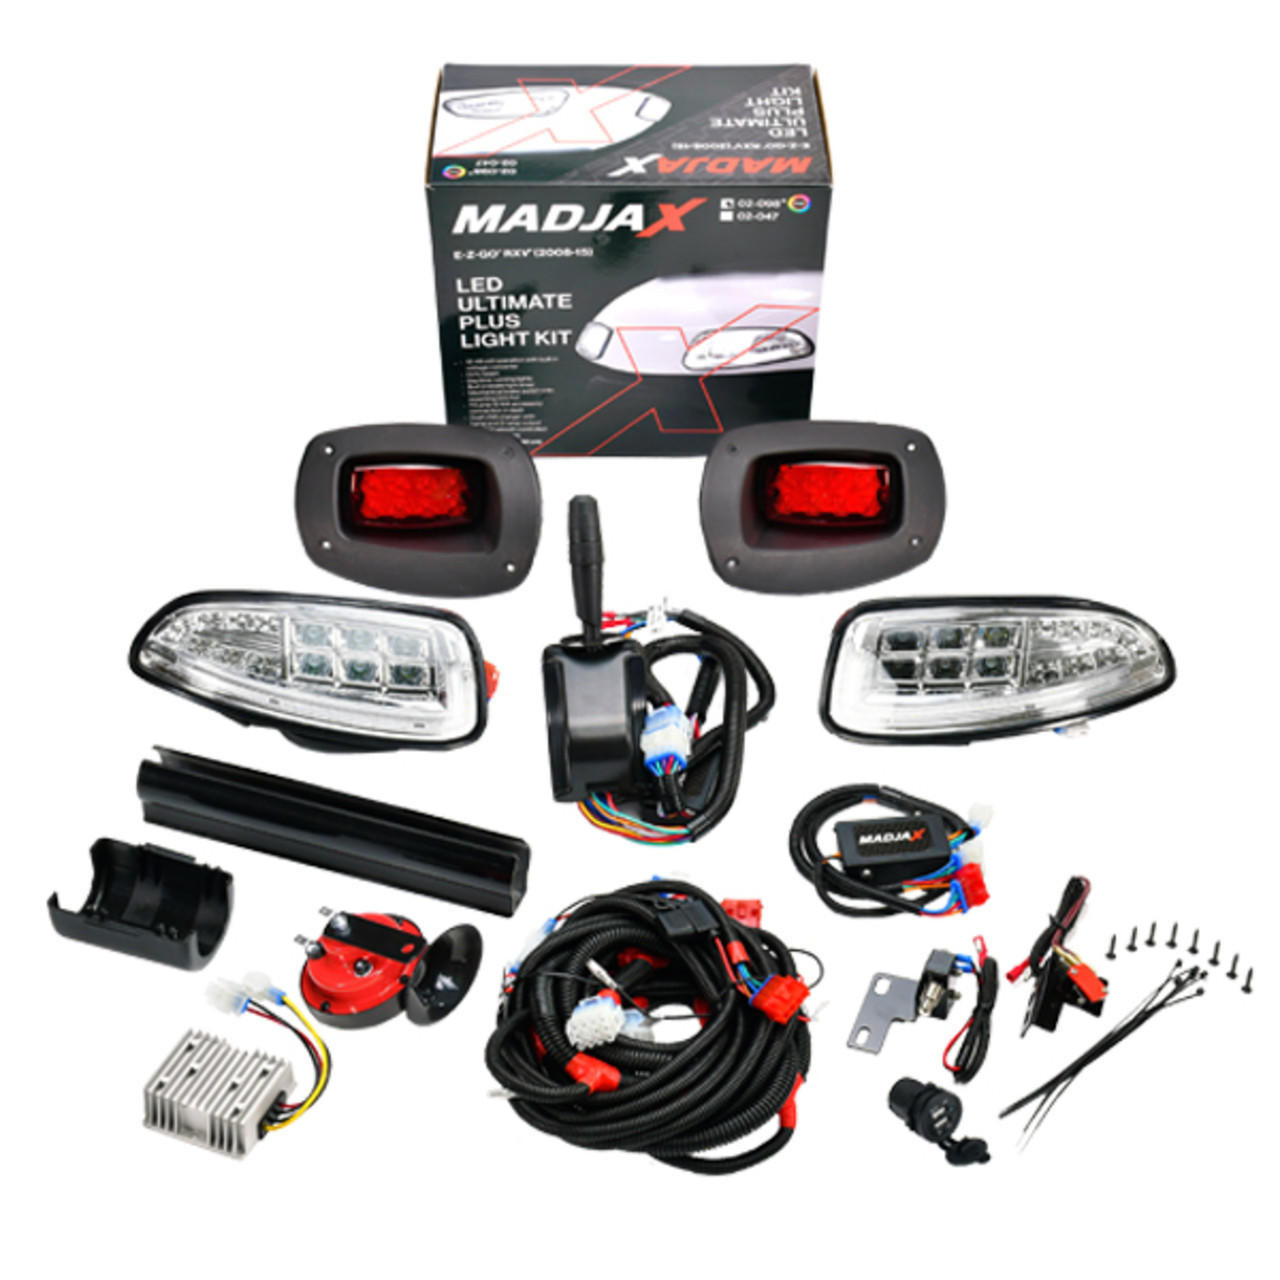 Madjax MadJax Ultimate Plus Light Kit - Fits E-Z-Go RXV 2008-2015 (Open Box) 